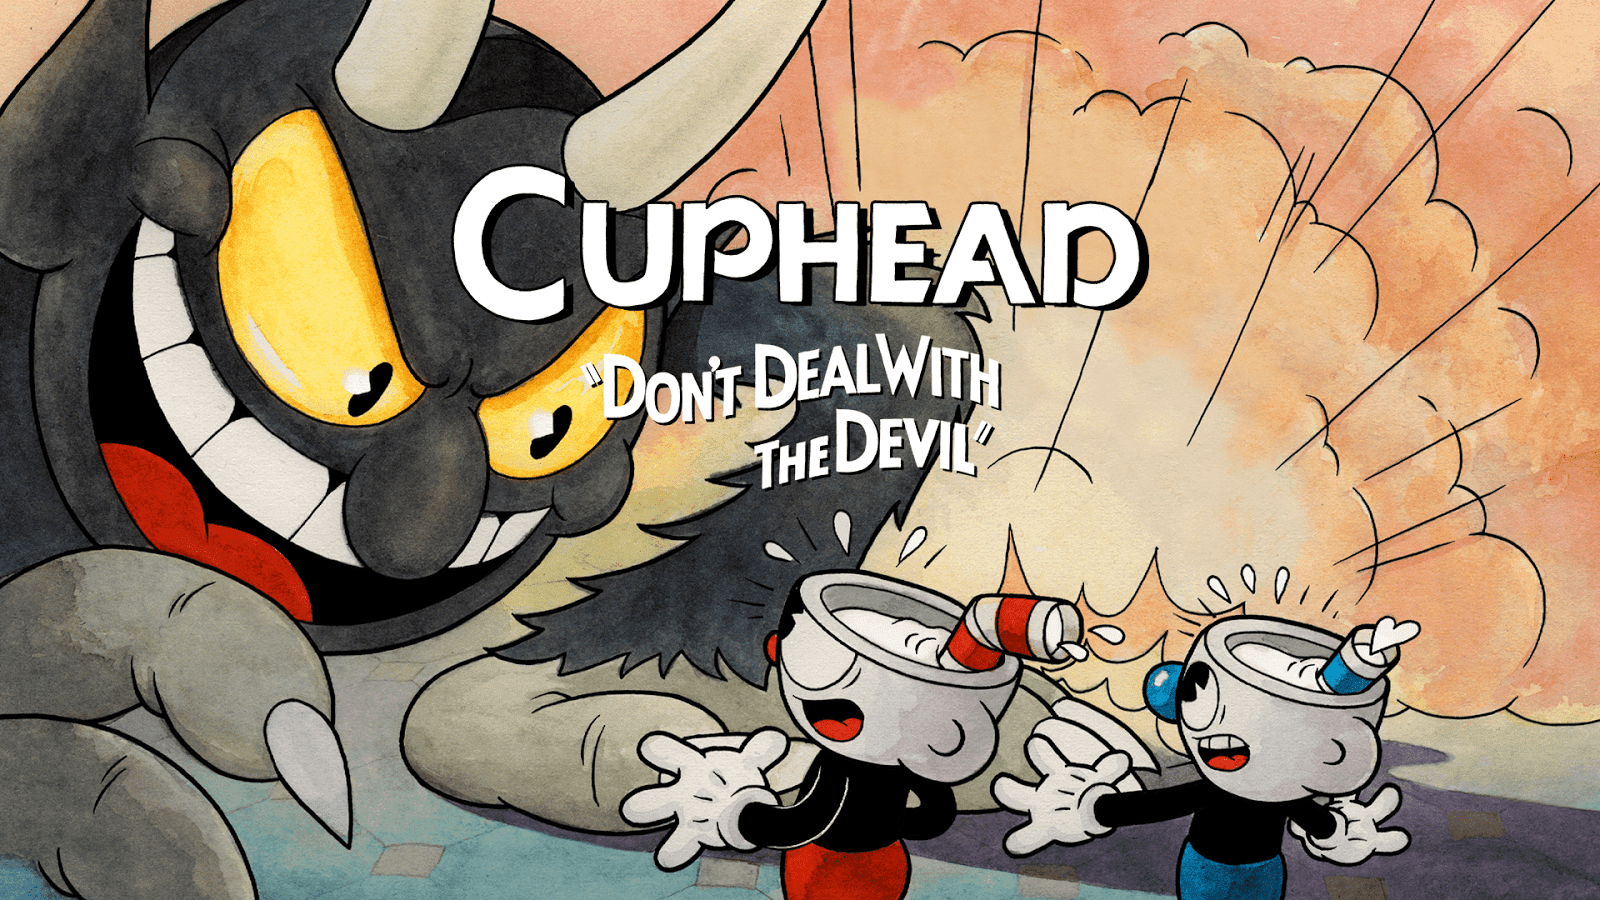 Conheça Cuphead, o jogo com visual dos desenhos animados da década